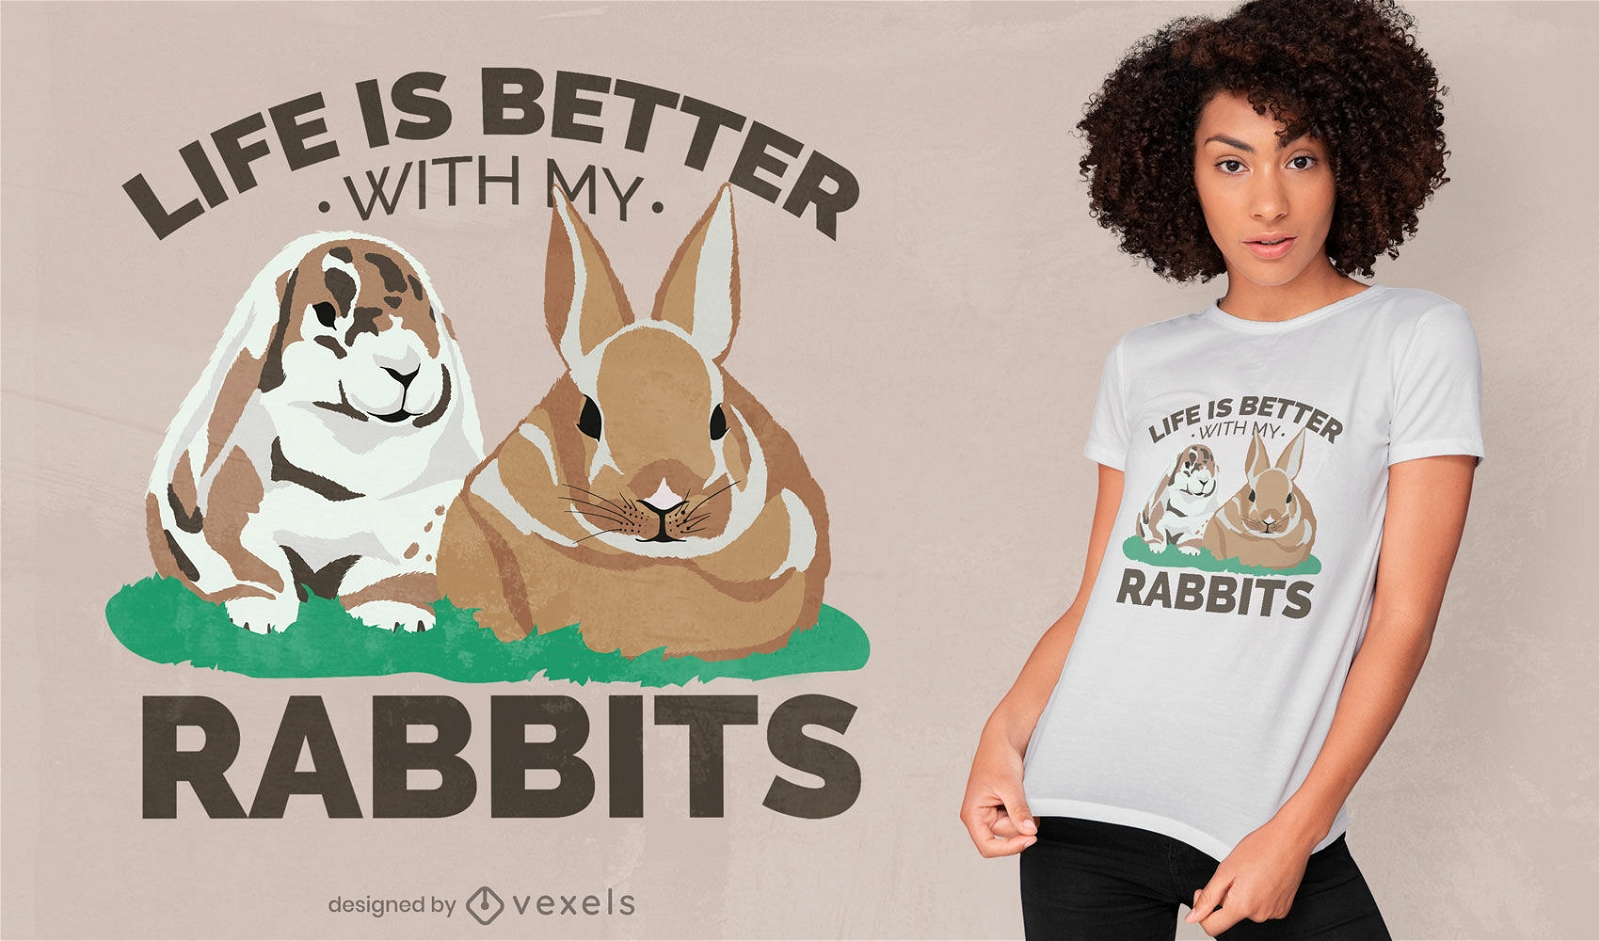 La vida es mejor con el dise?o de mi camiseta de conejos.